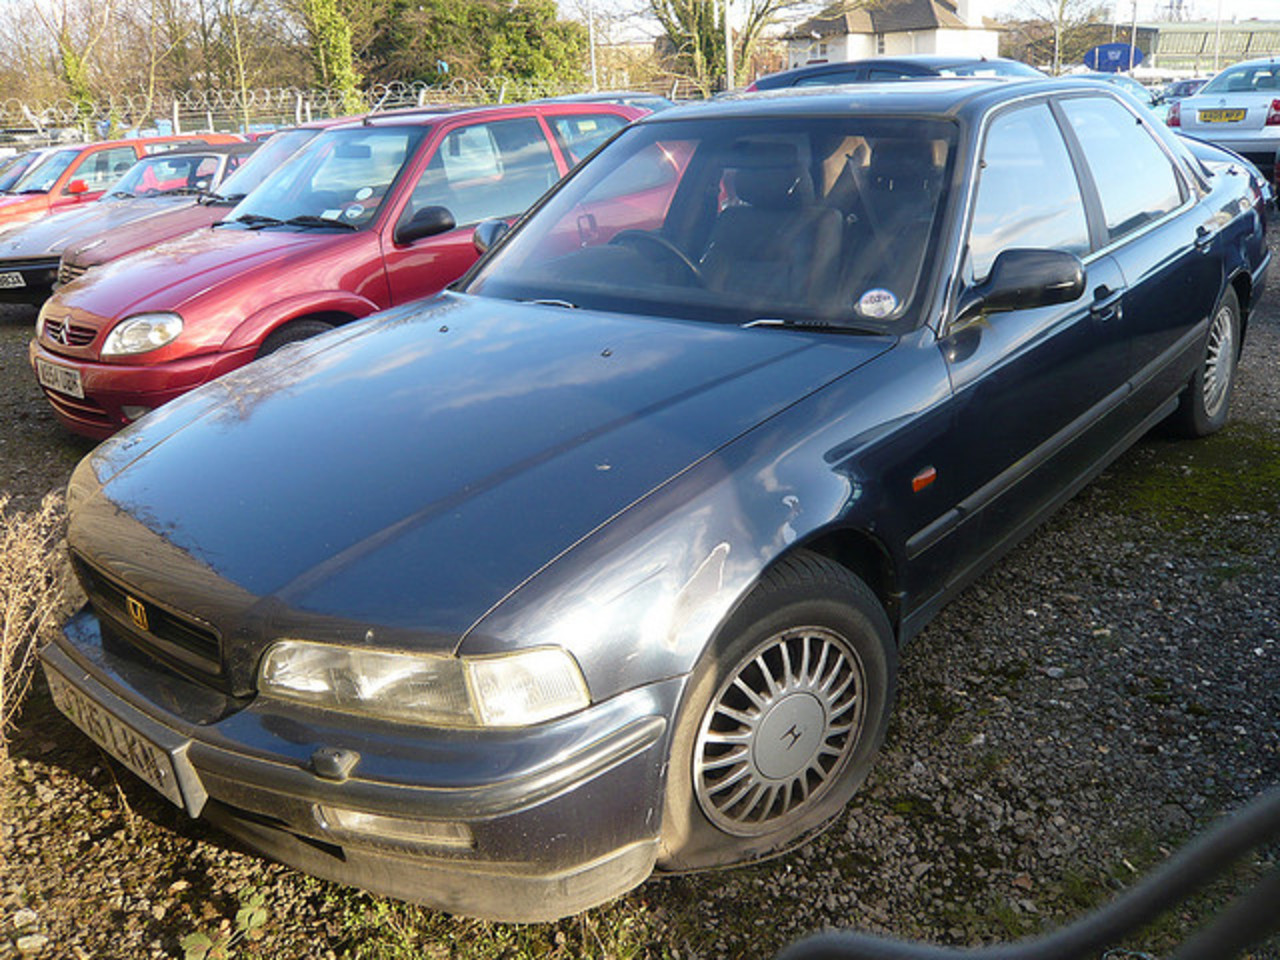 1991 Honda Legend V6 in Ipswich | Flickr - Photo Sharing!